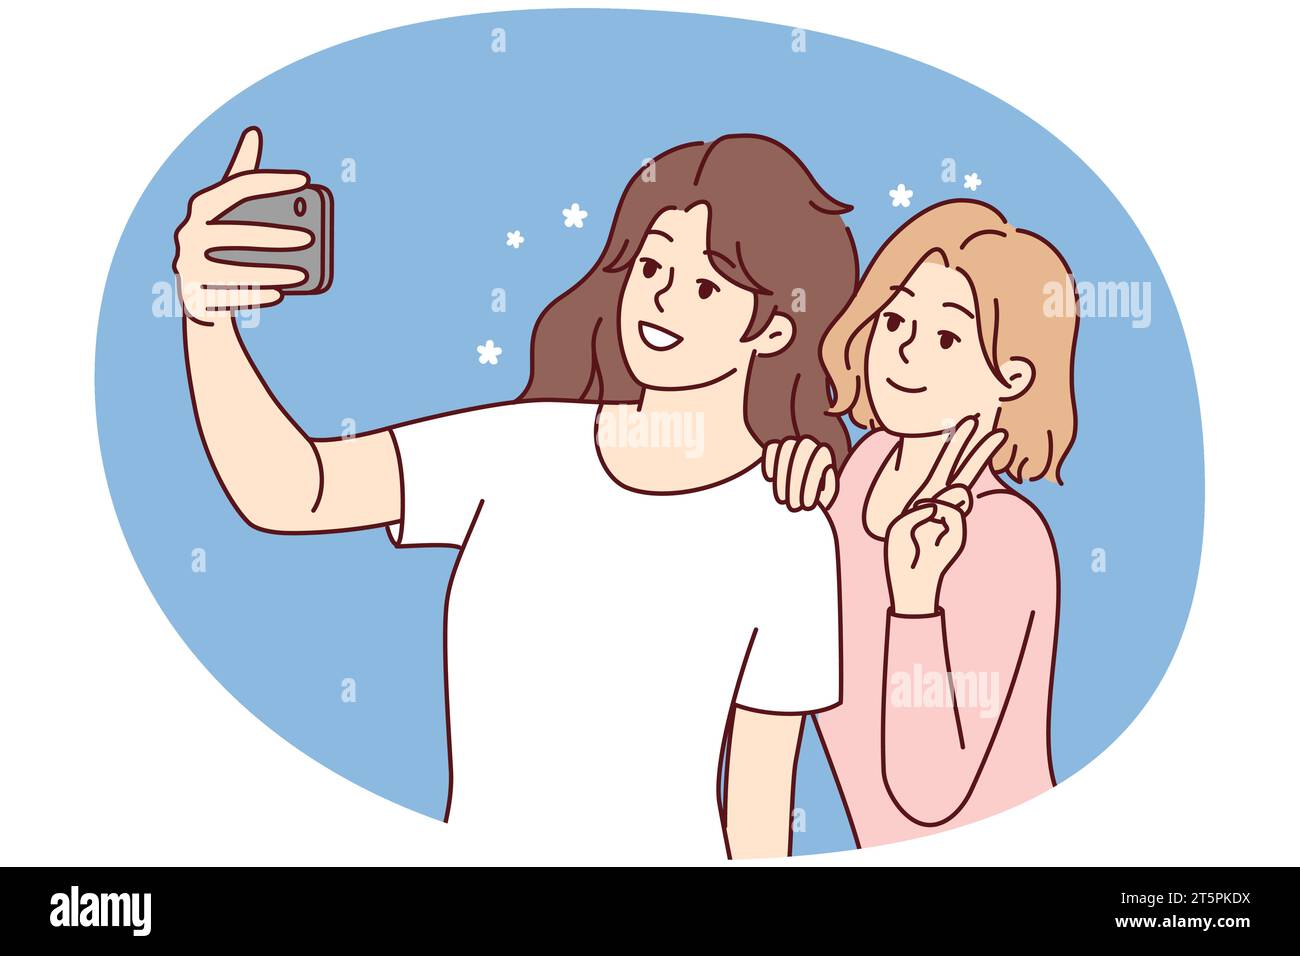 Ragazze sorridenti che fanno selfie sullo smartphone insieme. Le donne felici si divertono a scattare foto autoritratto su una moderna fotocamera del cellulare. Illustrazione vettoriale. Illustrazione Vettoriale